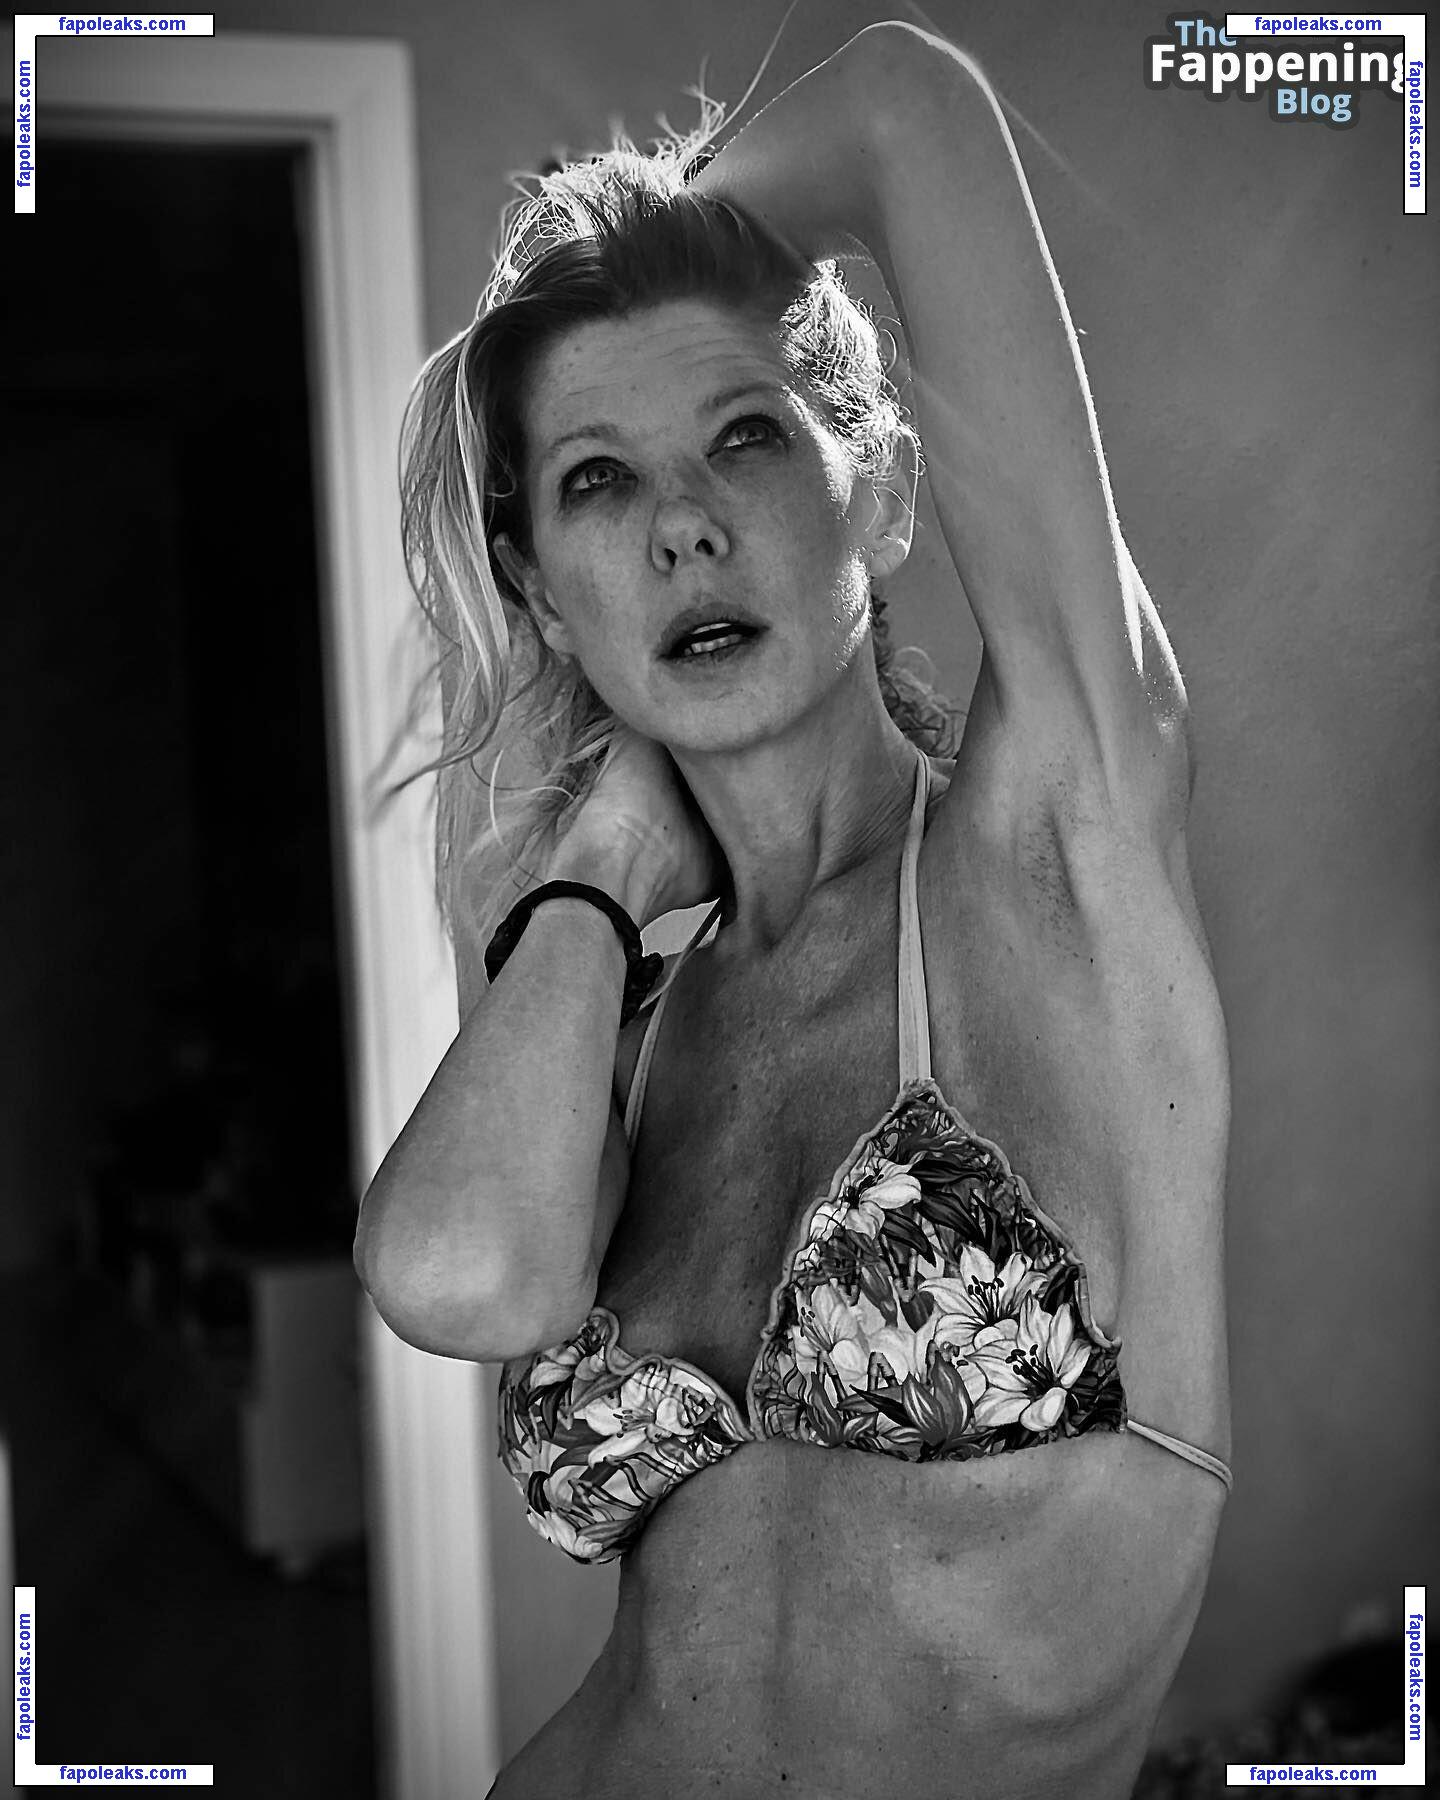 Tara Reid / tarareid nude photo #0776 from OnlyFans